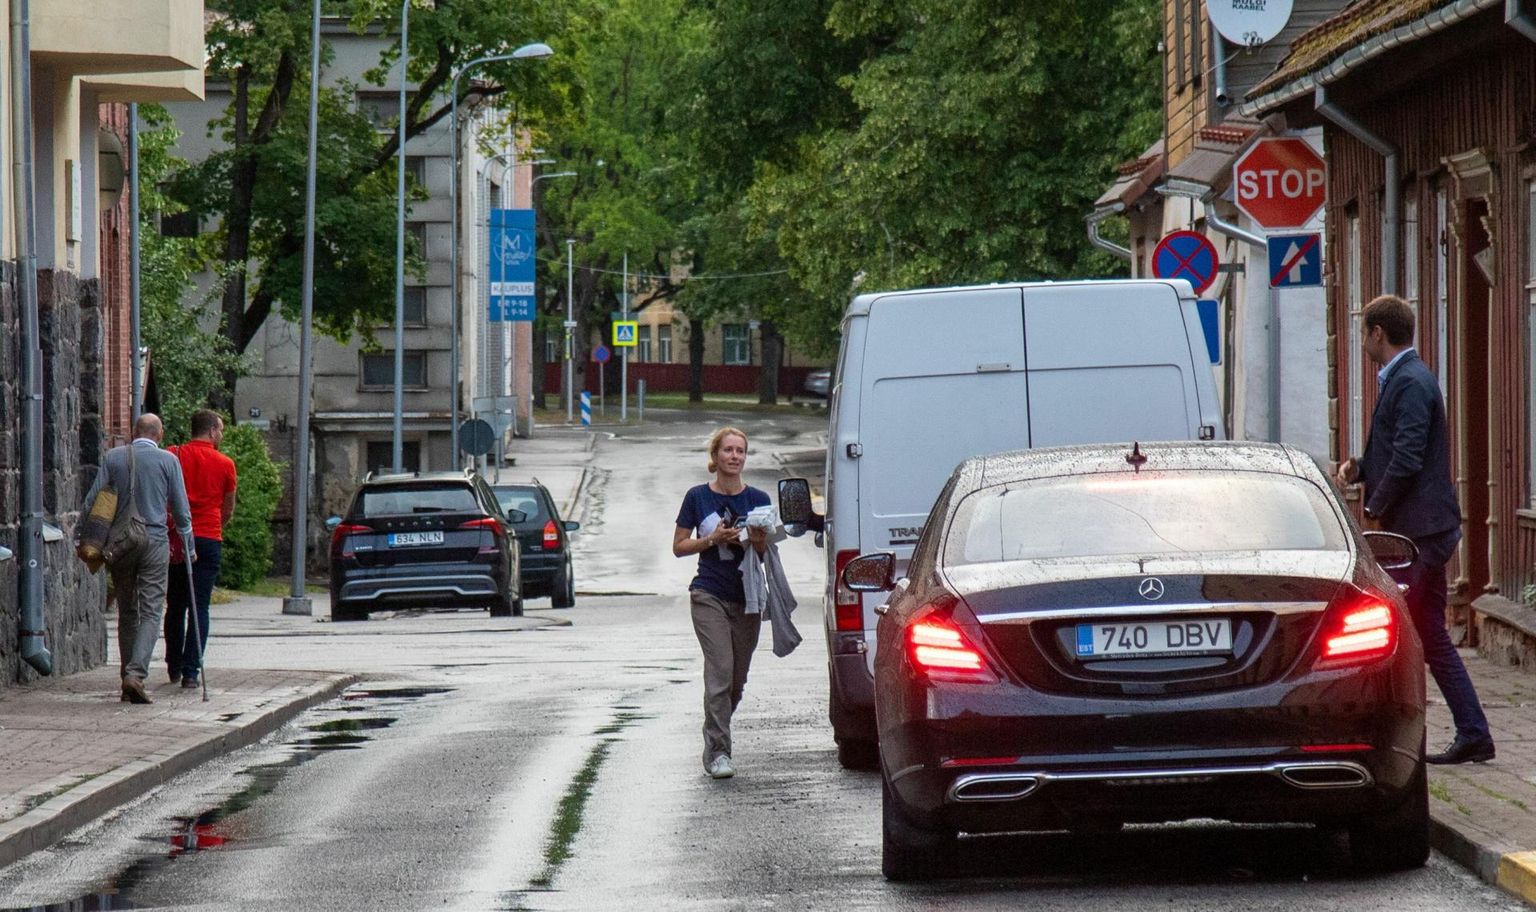 Kui kolme erakonna juhi kohtumine Viljandi vanalinnas läbi sai, tõttas peaminister Kaja Kallas teda ootavasse autosse ning Helir-Valdor Seeder ja Lauri Läänemets (mõlemad fotol vasakul) kõndisid teisele poole.